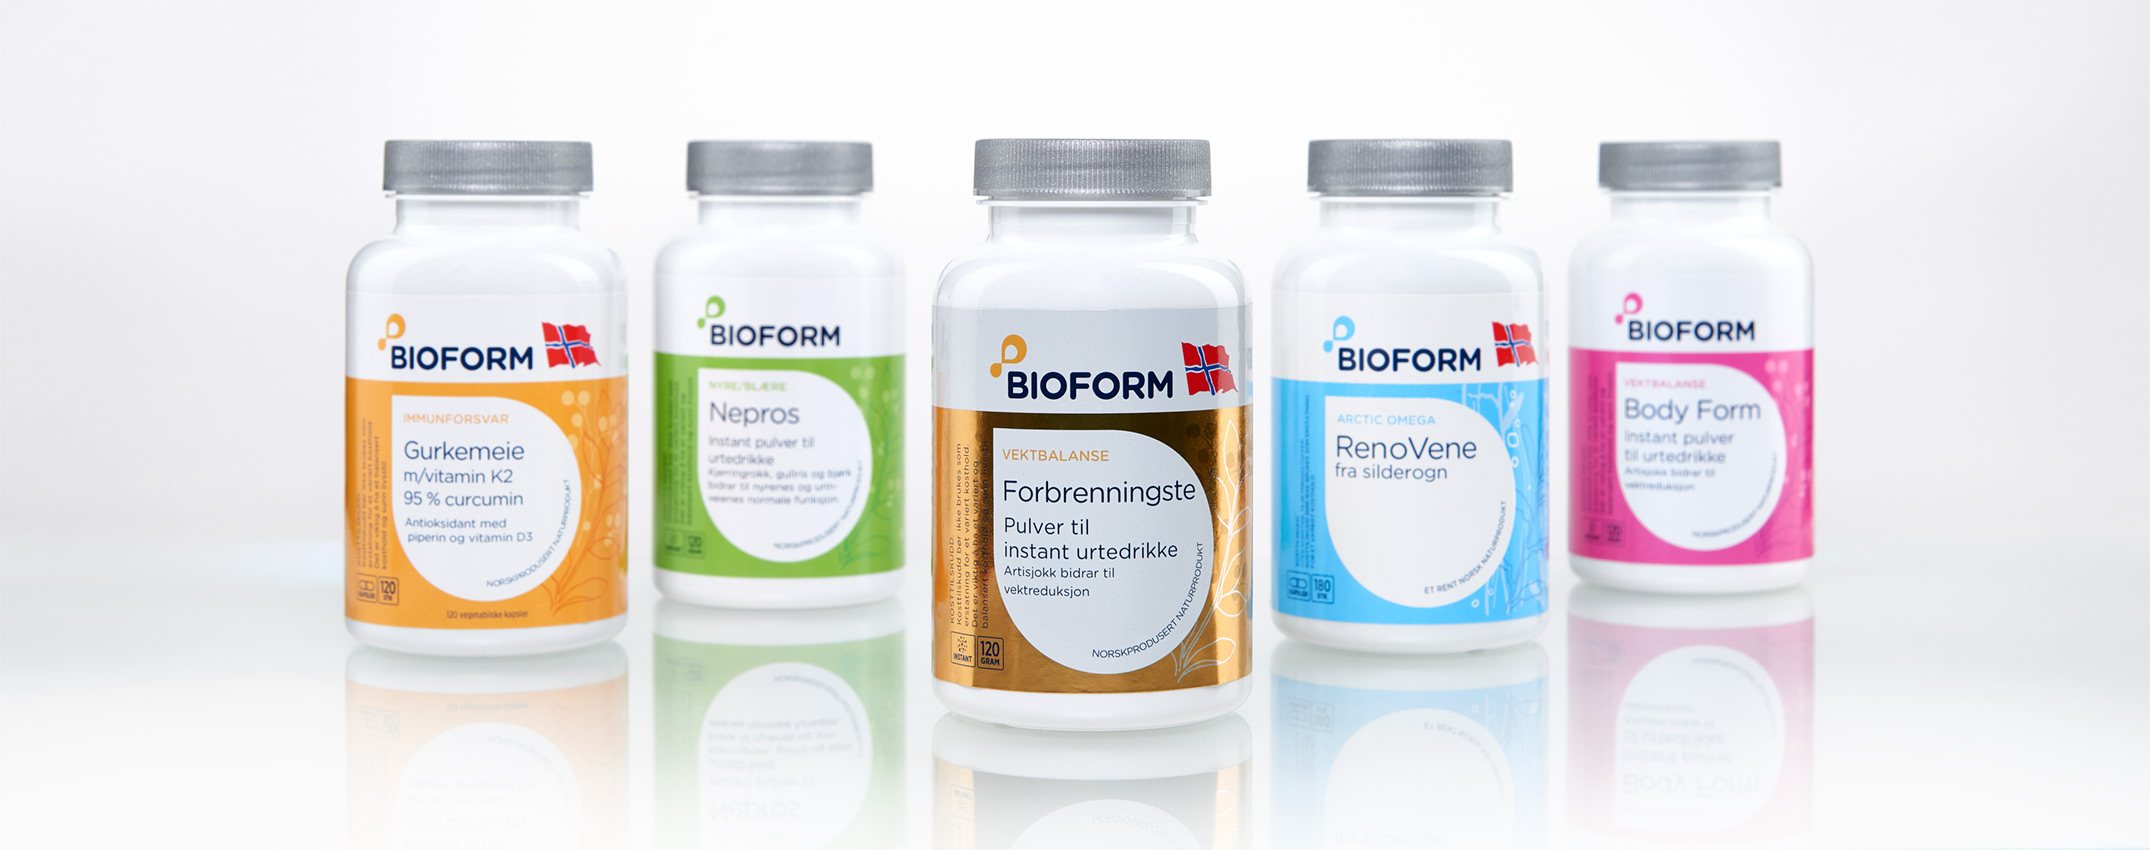 Produktfotos og packshots til Bioform kosttilskud - taget af Koldsø Fotografi